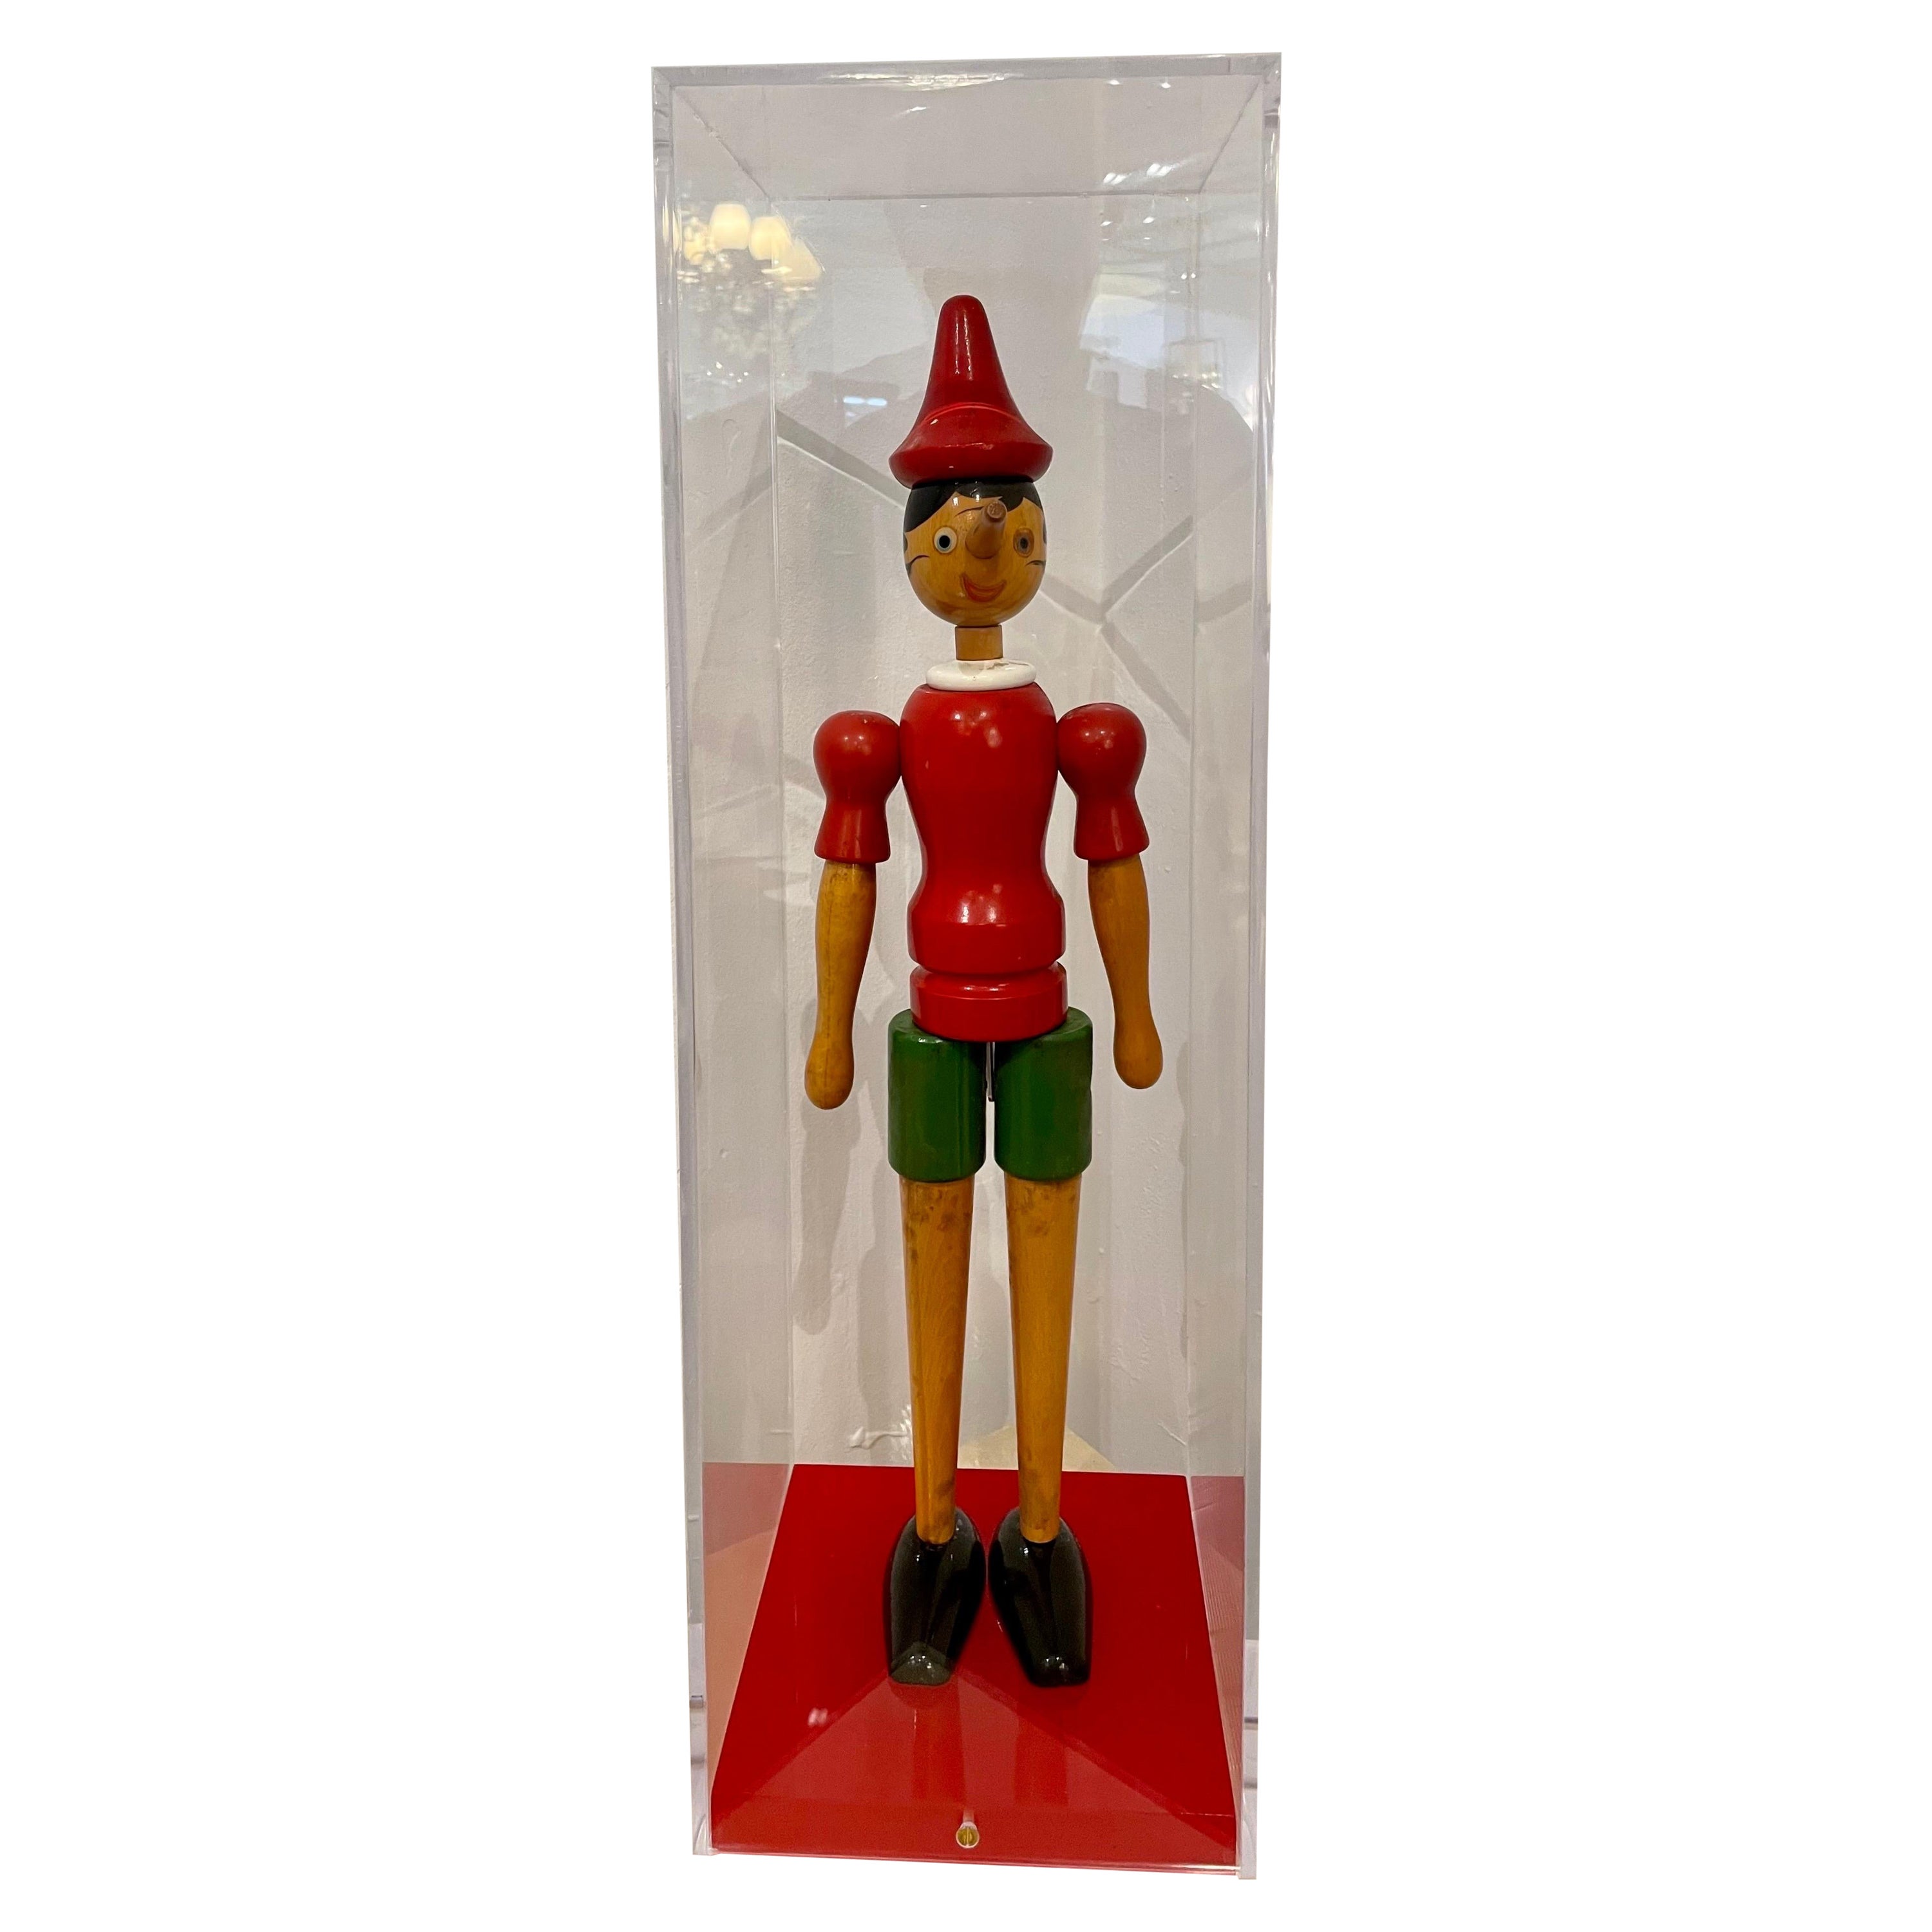 Jouet Pinocchio italien ancien en bois dans une boîte d'exposition personnalisée en lucite